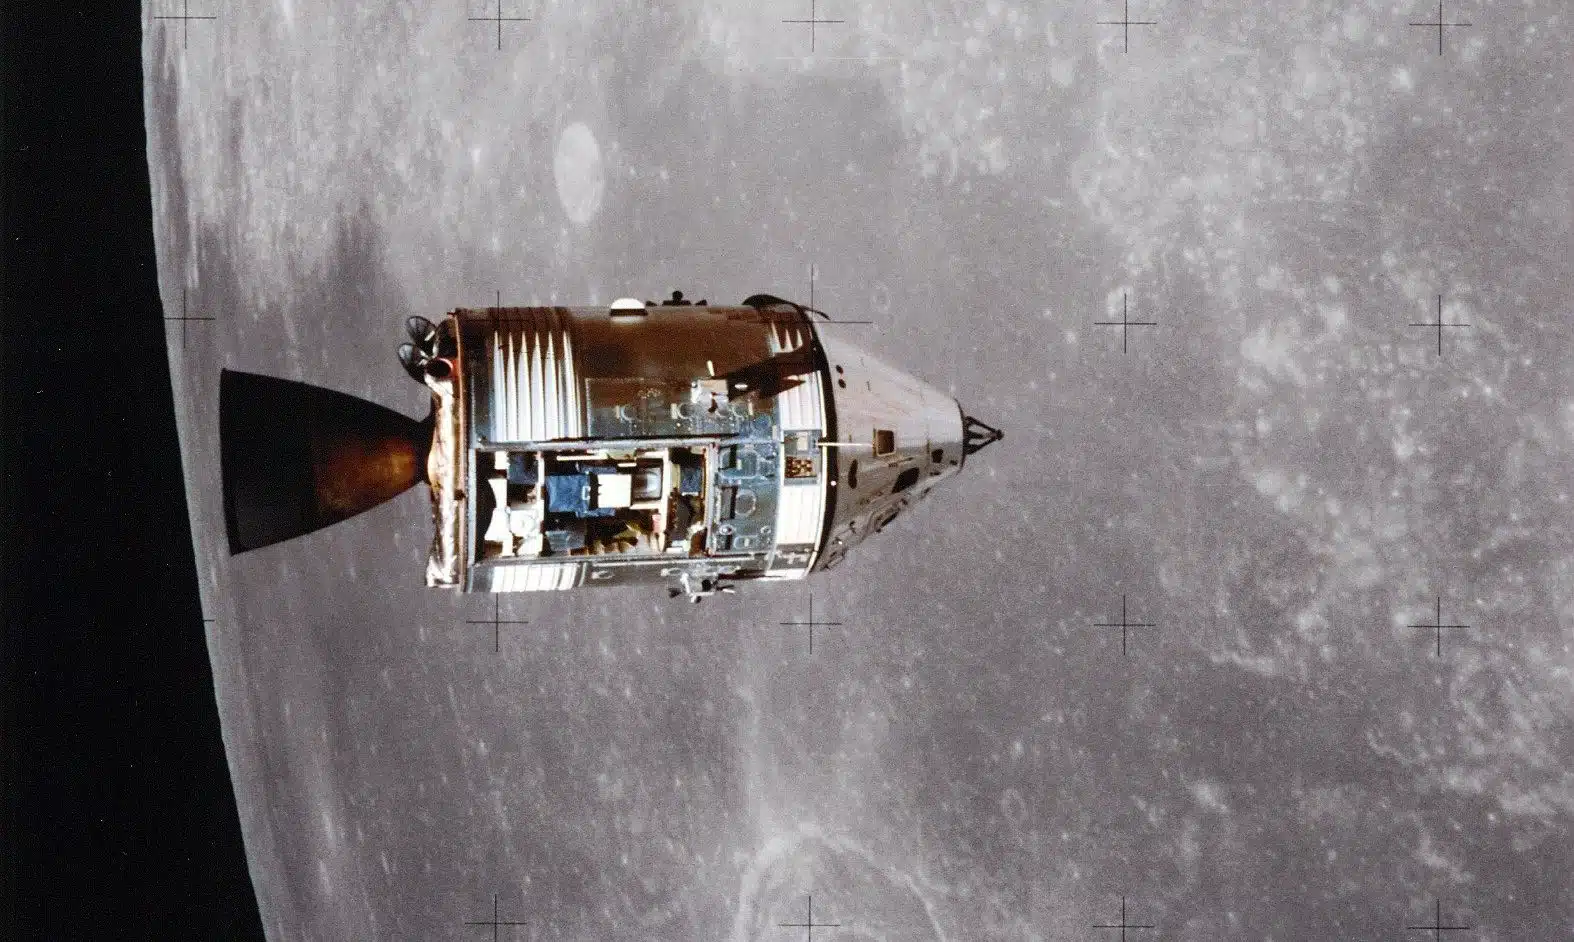 Jedan je astronaut ostajao u orbiti u zapovjedno-servisnom modulu (Foto: NASA)